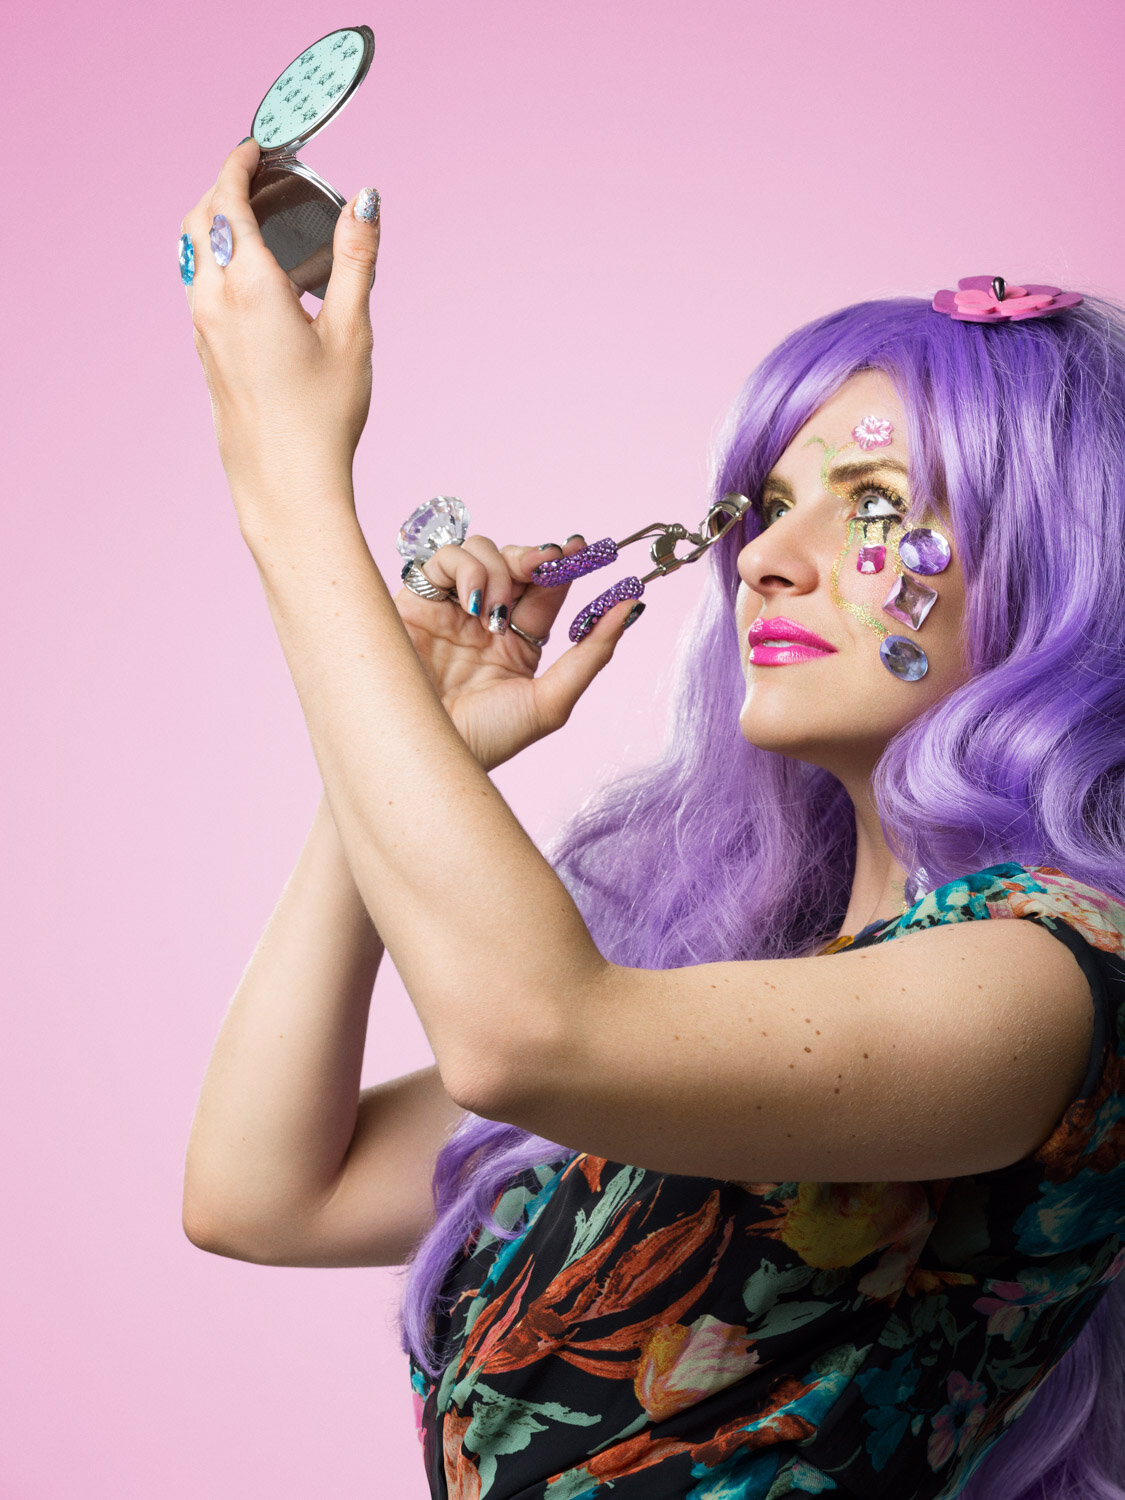 bedazzled beauty portrait promoting entertainer Michelle Joni by creative portrait photographer Hanna Agar